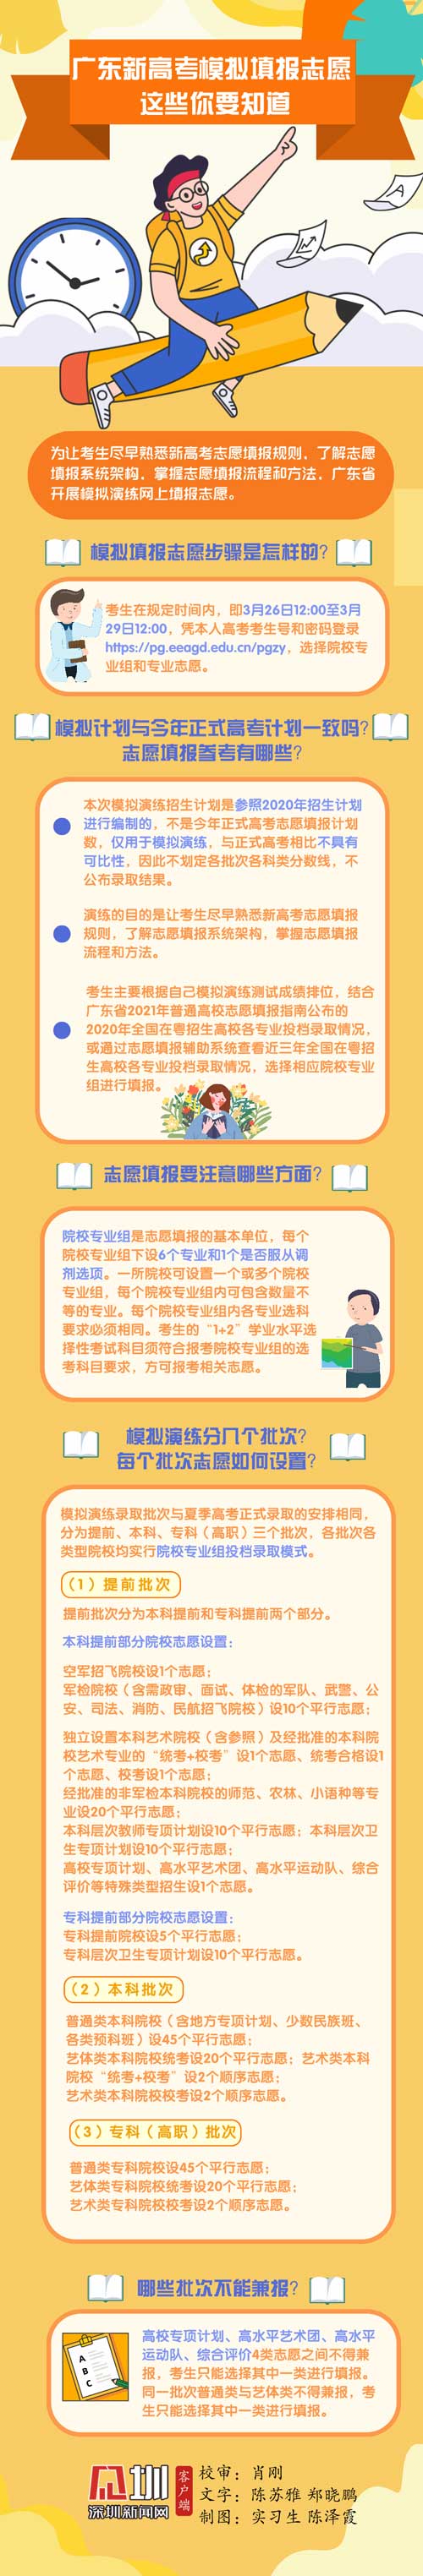 广东新高考模拟填报志愿于3月26日开始 附模拟志愿填报相关问答